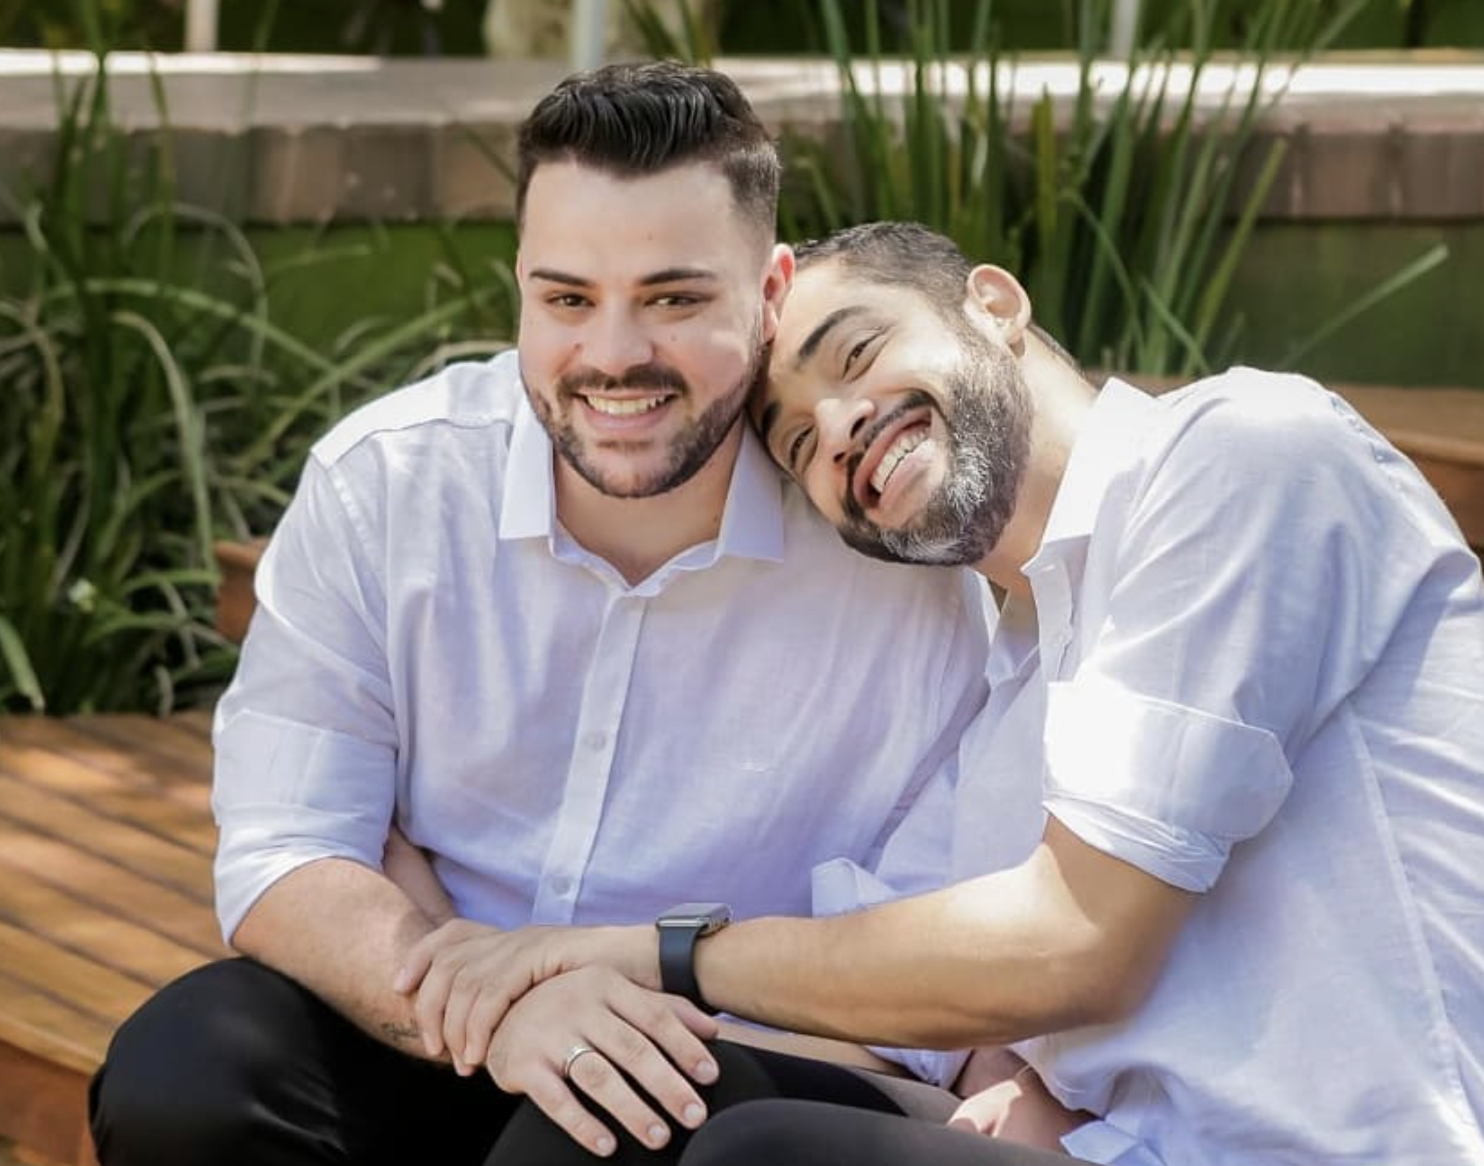 “Casamento homossexual”: casal gay denuncia loja que recusou encomenda